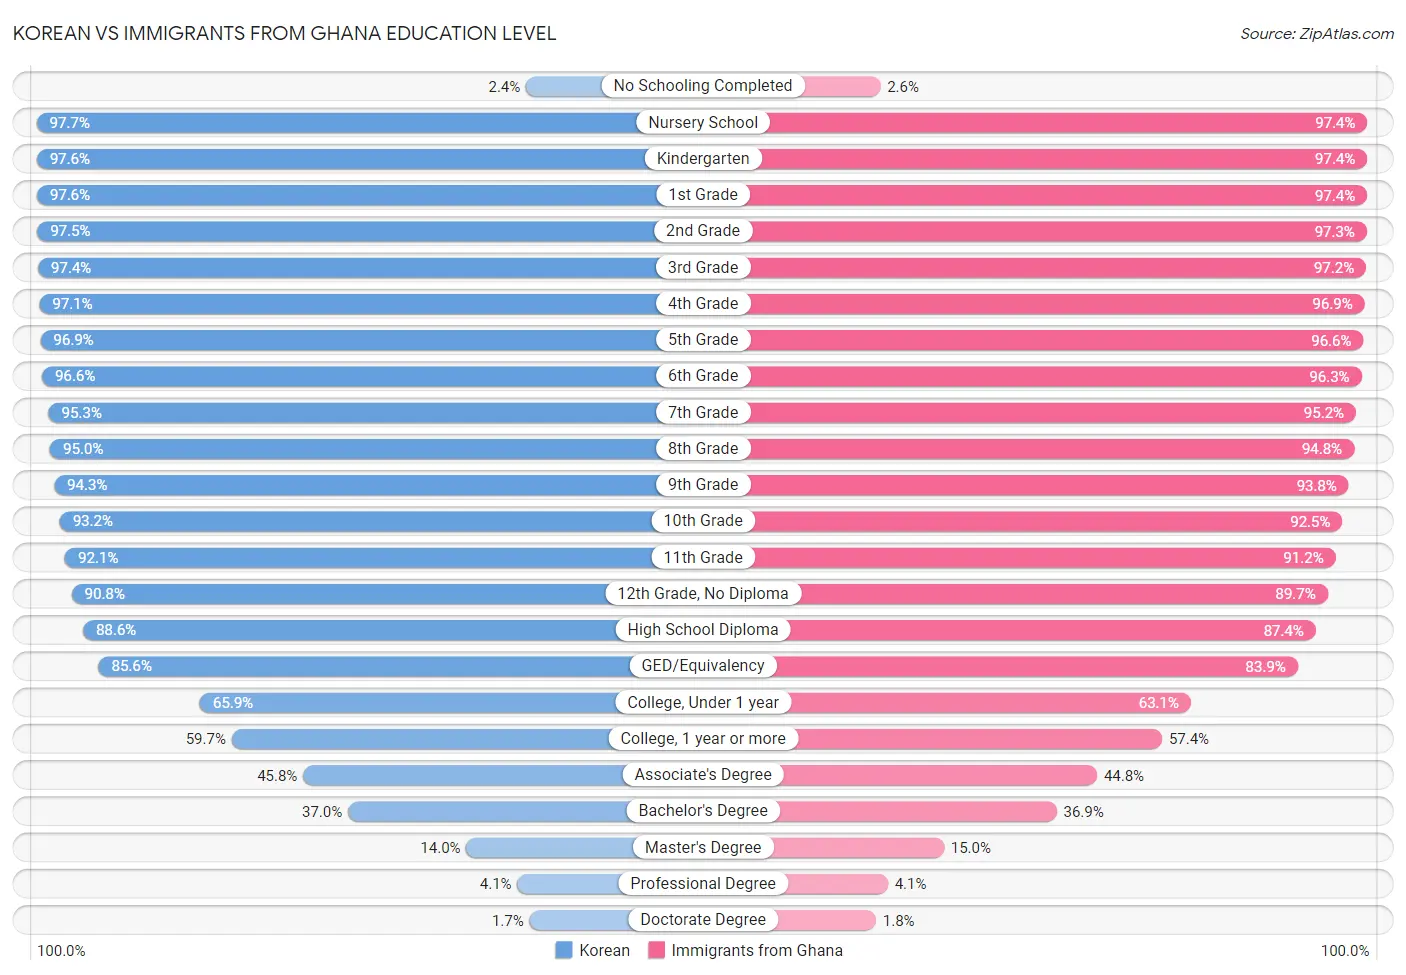 Korean vs Immigrants from Ghana Education Level